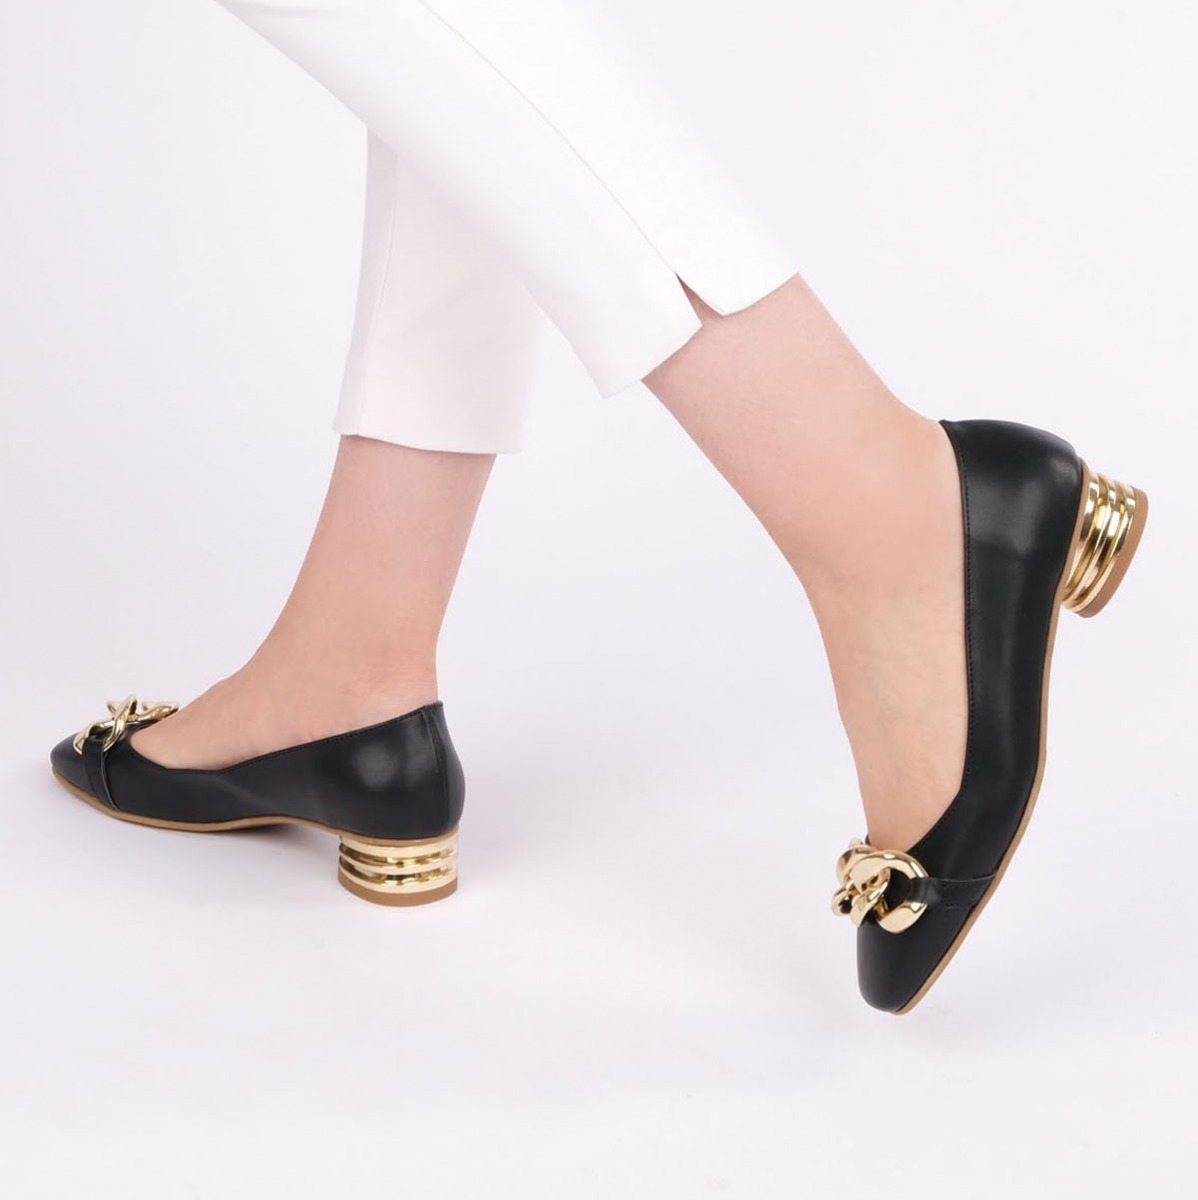 Flo Kadın Günlük Klasik Topuklu Ayakkabı Giva Siyah. 2